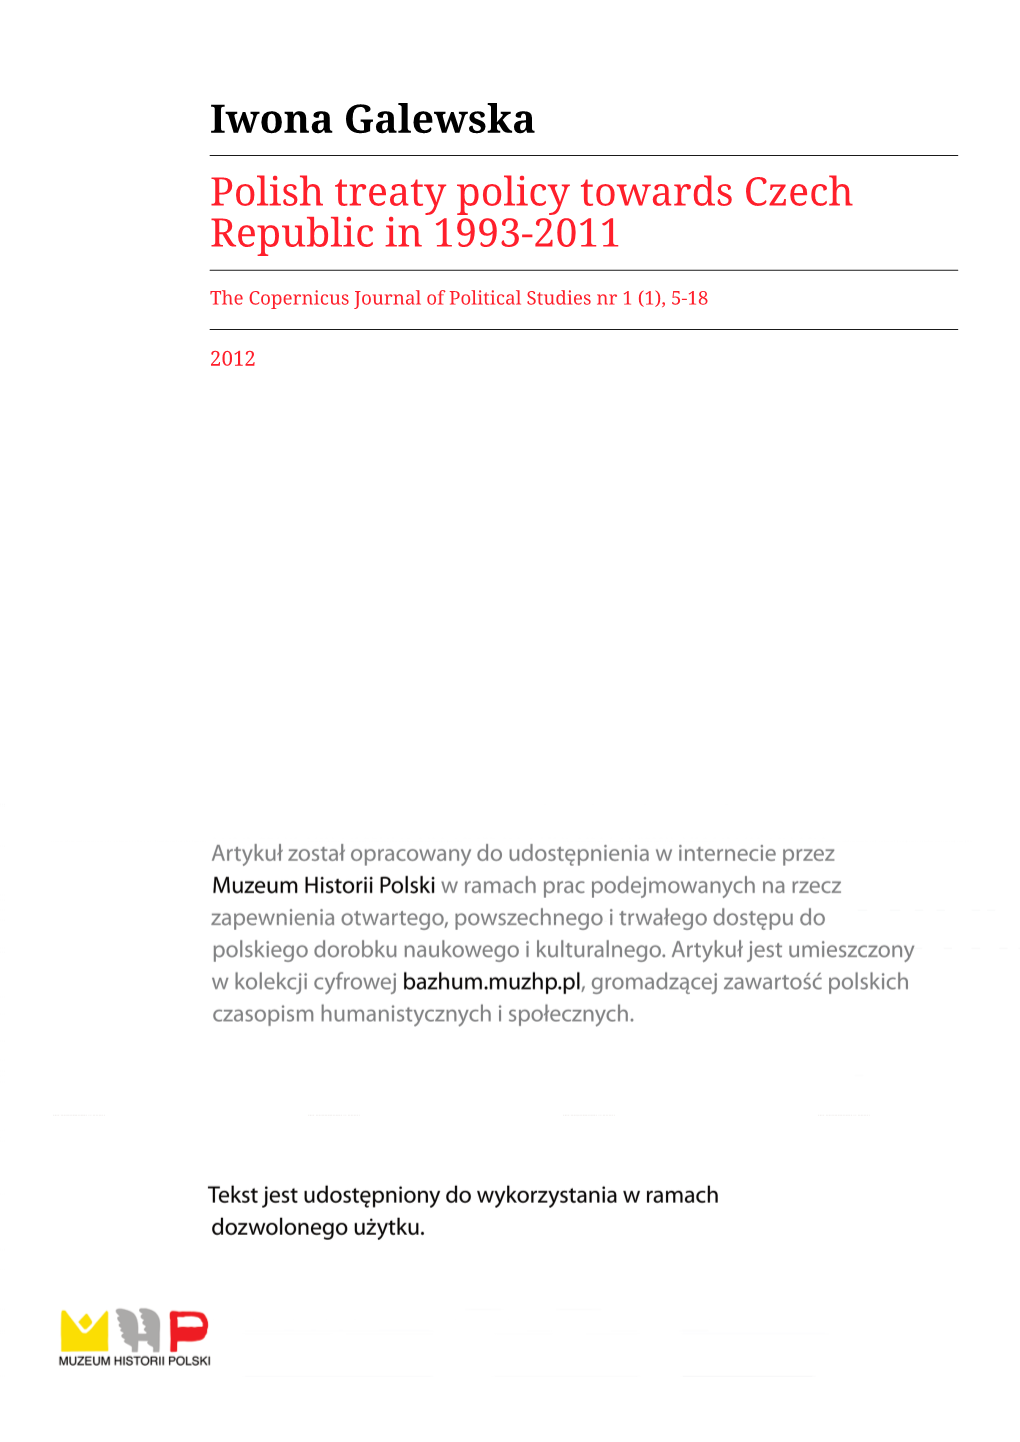 Iwona Galewska Polish Treaty Policy Towards Czech Republic in 1993-2011